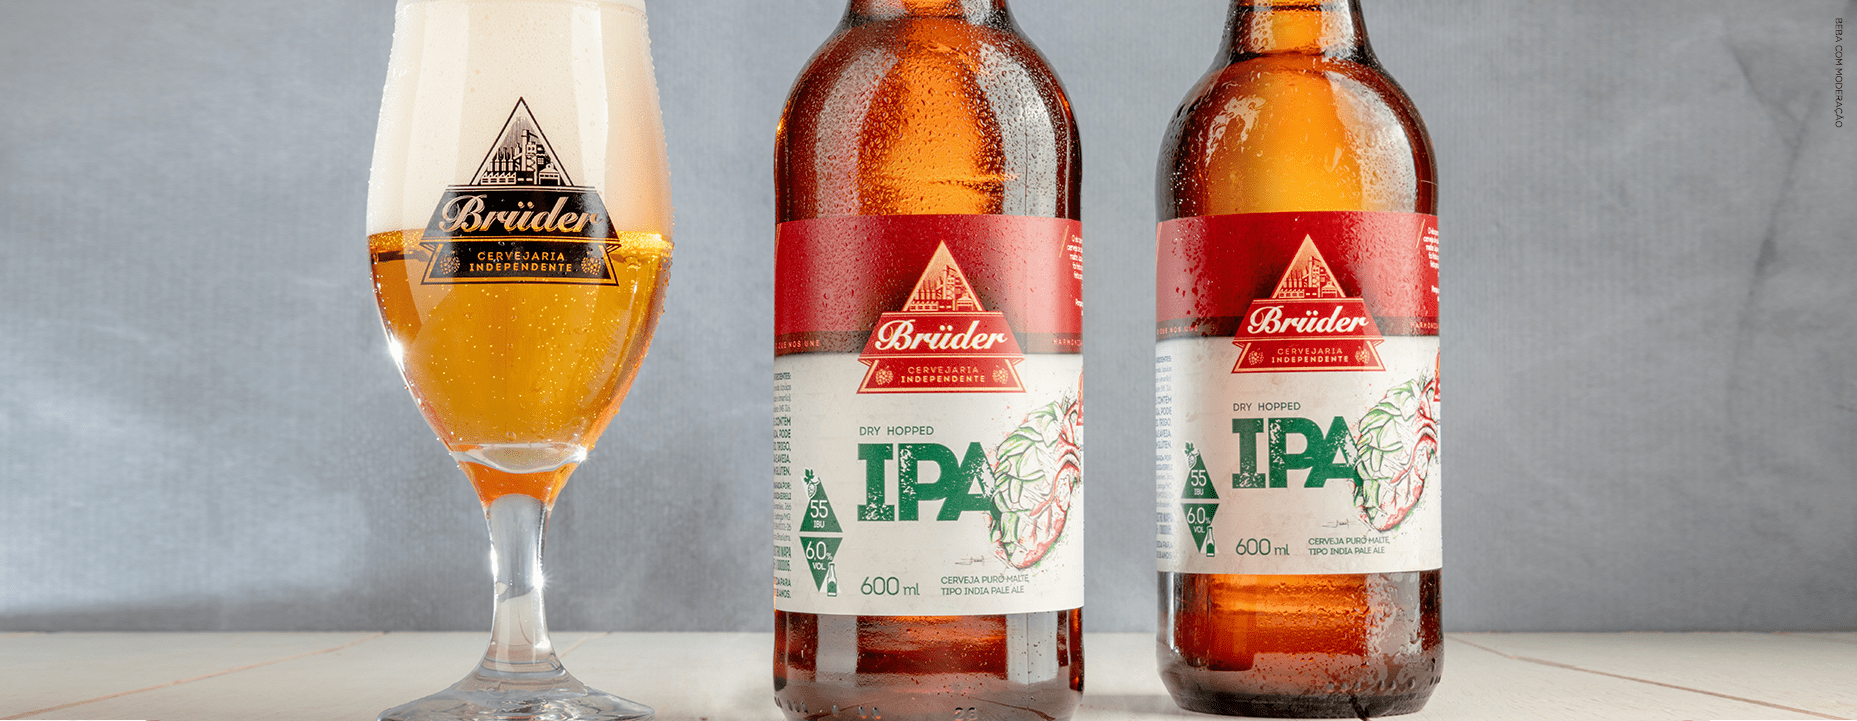 garrafas da cerveja India Pale Ale IPA Brüder com taças servidas.